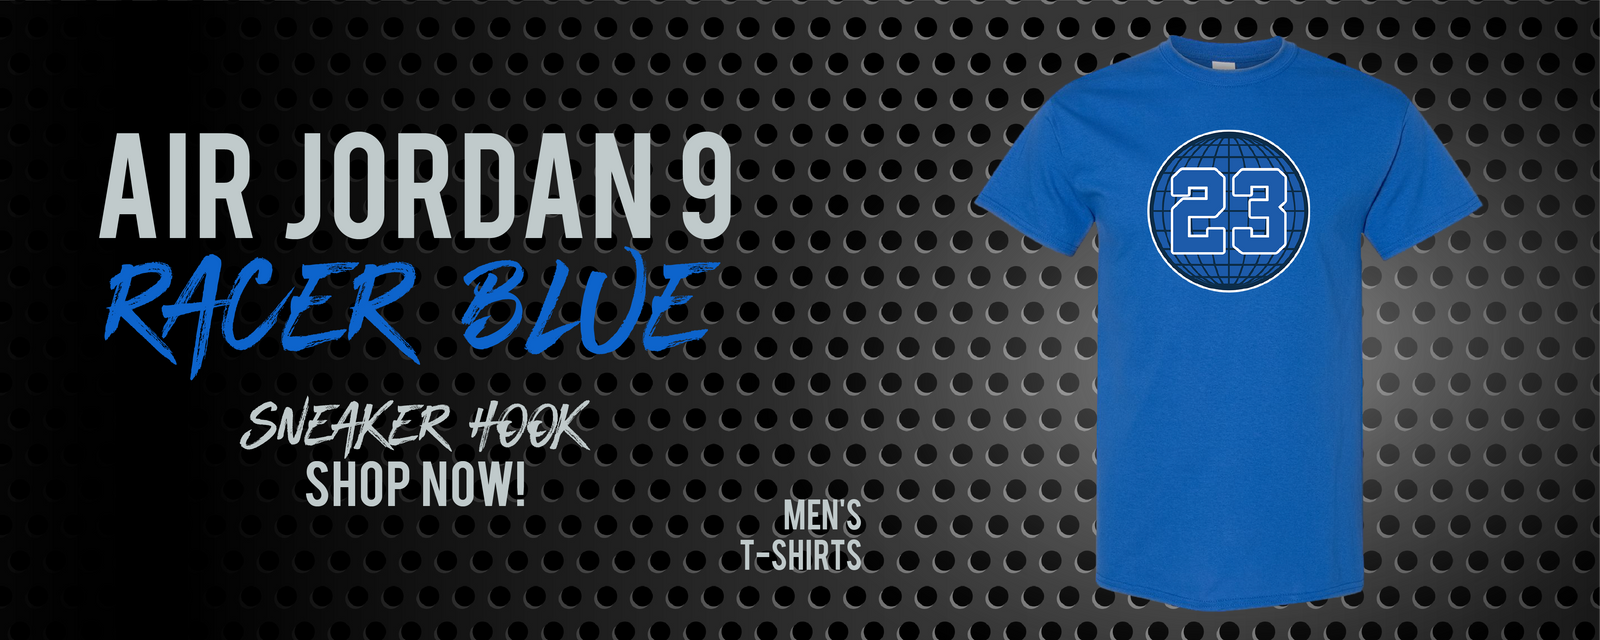 jordan 9 racer blue shirts